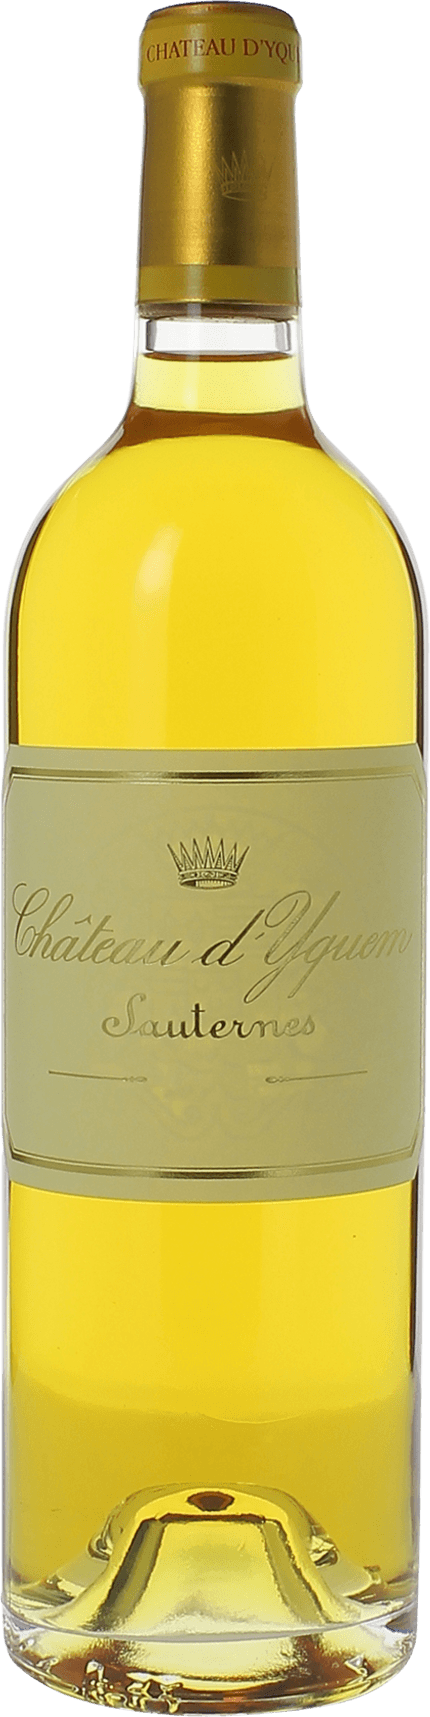 Yquem 1967 1er Grand cru class Sauternes, Bordeaux blanc